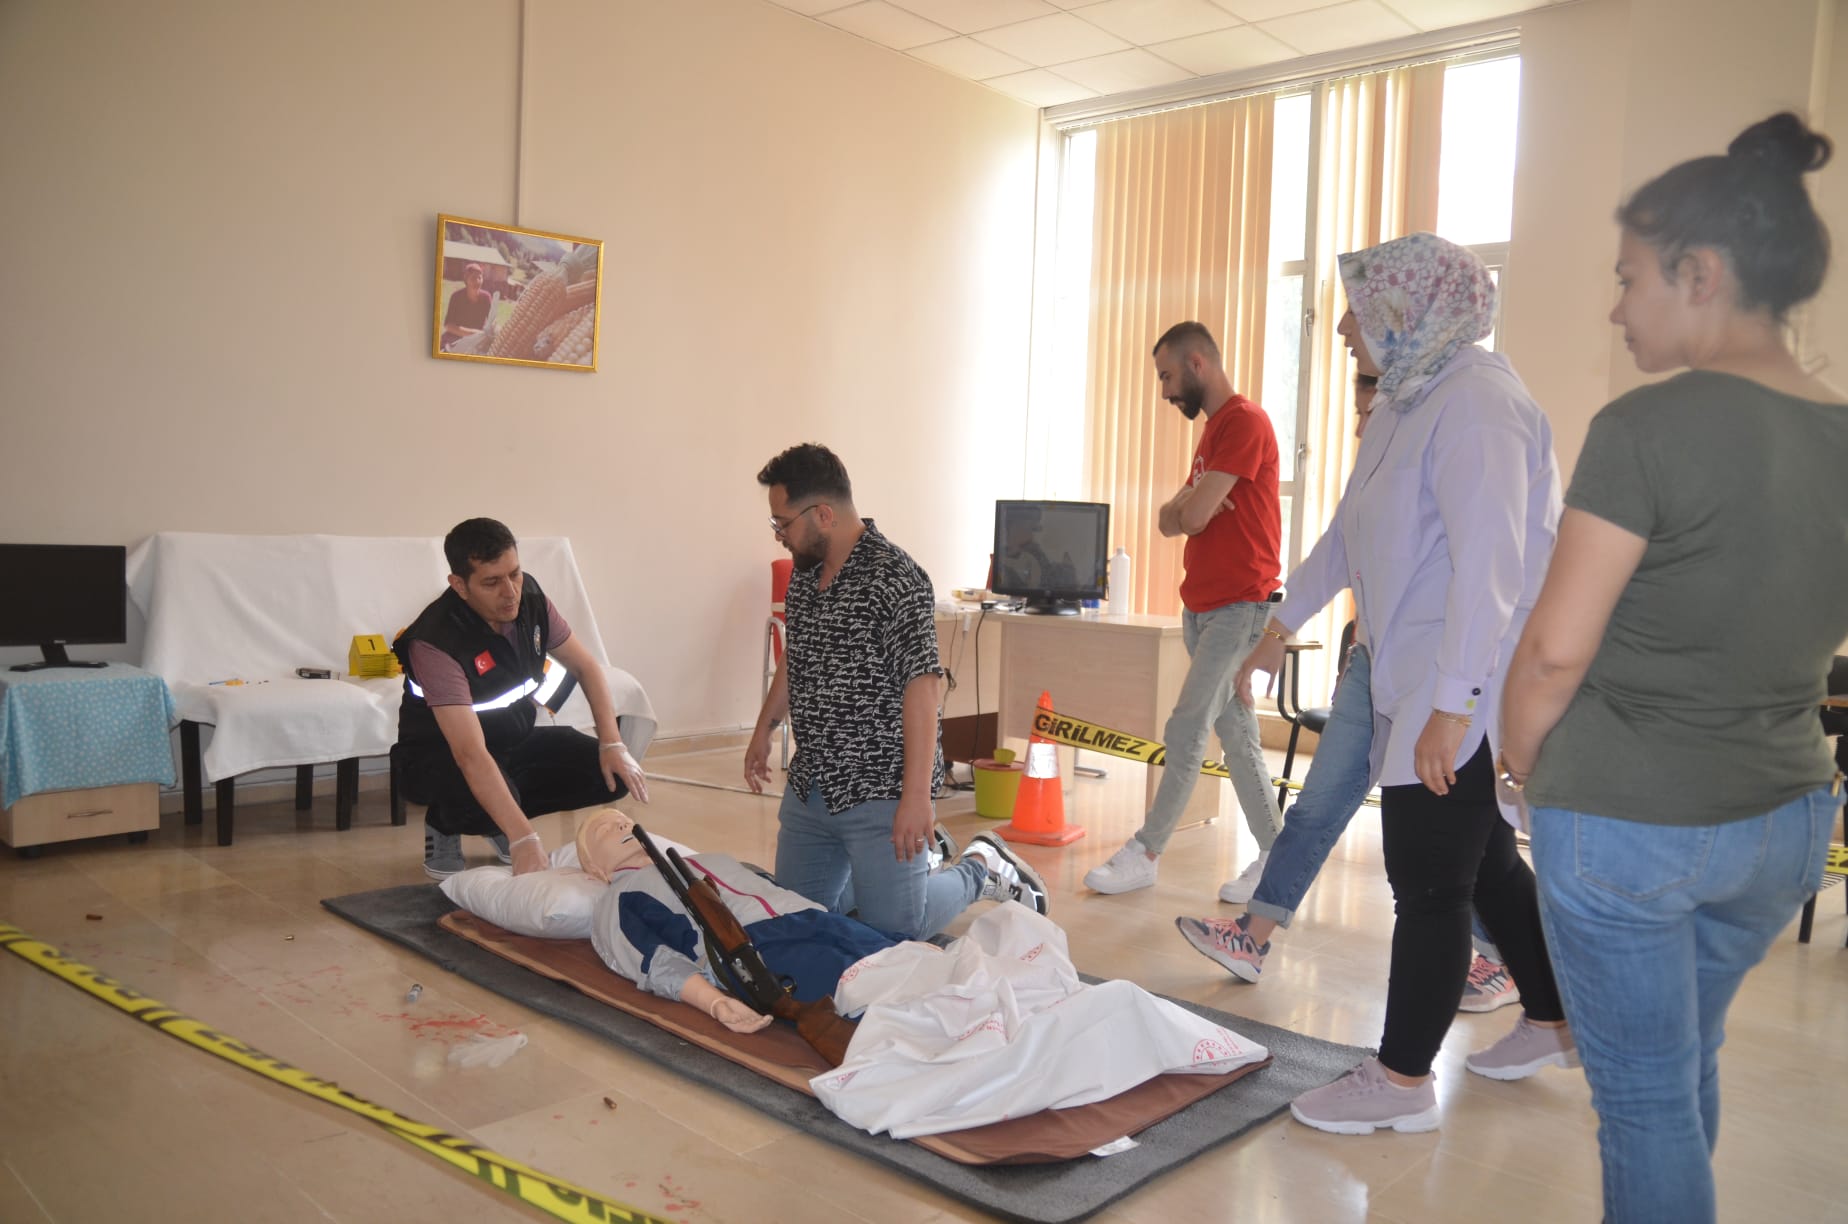 Malatya İl Emniyet Müdürlüğü ekiplerince, 112 Acil Servis Başhekimliğine bağlı acil servis ambulanslarında  görev yapan  "112 Acil Sağlık Hizmetleri Personelinin Adli Vakalarda Maddi Delillere Yaklaşım Eğitimi" verildi